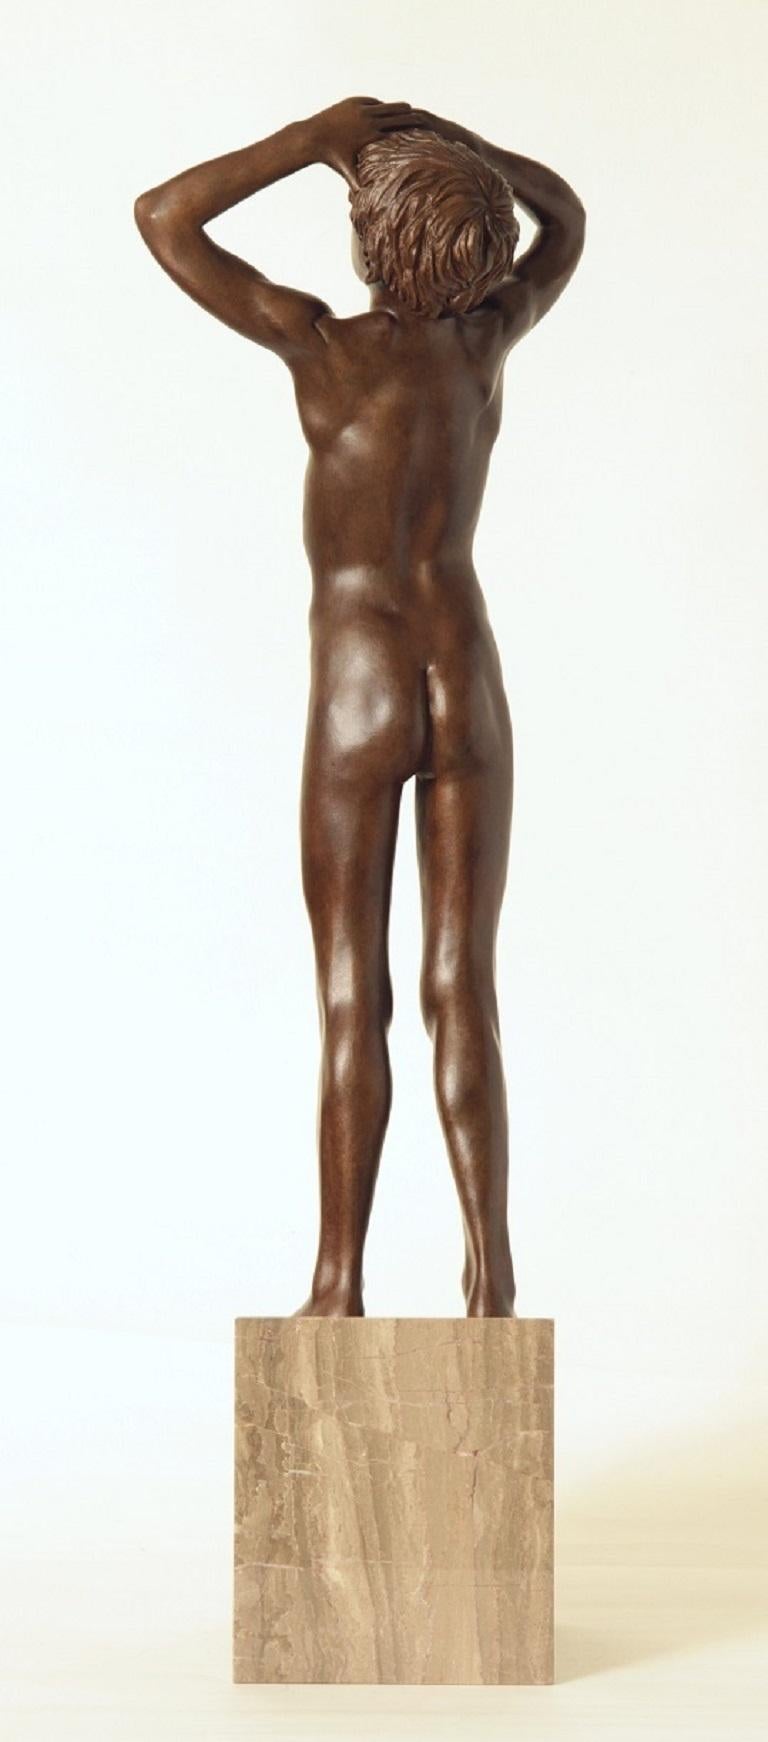 Aquila Bronze Skulptur Nackter Junge Marmor Stein Contemporary Auf Lager - Skulptur ohne Stein ist 57 cm hoch

Wim van der Kant (1949, Kampen) ist ein autodidaktischer Künstler. Neben seinem ausgefüllten Beruf als Lehrer an einem Gymnasium übt er